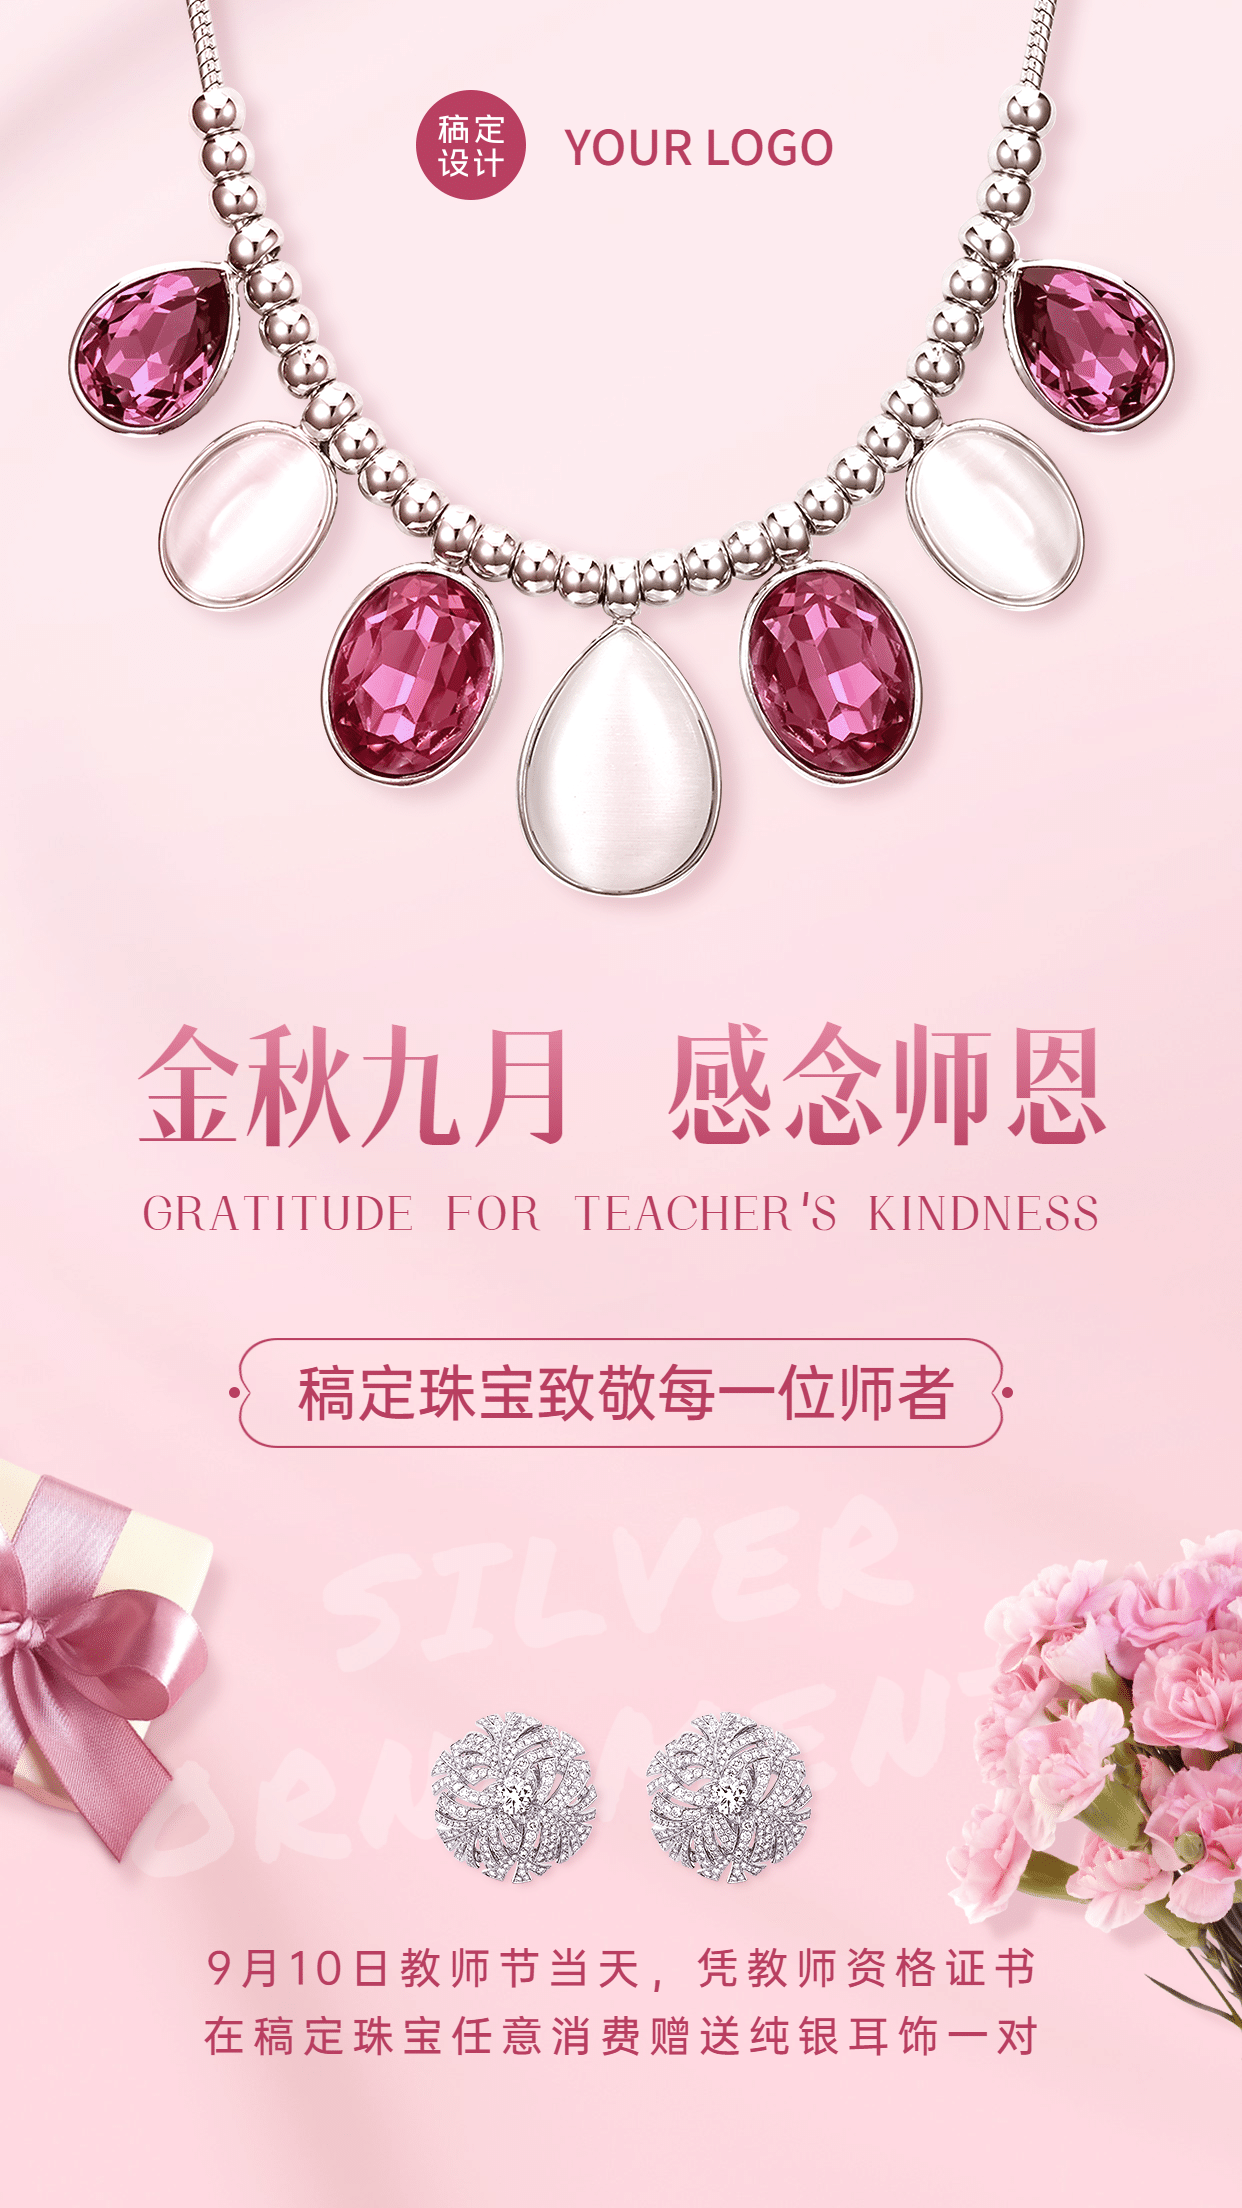 教师节珠宝产品营销促销手机海报